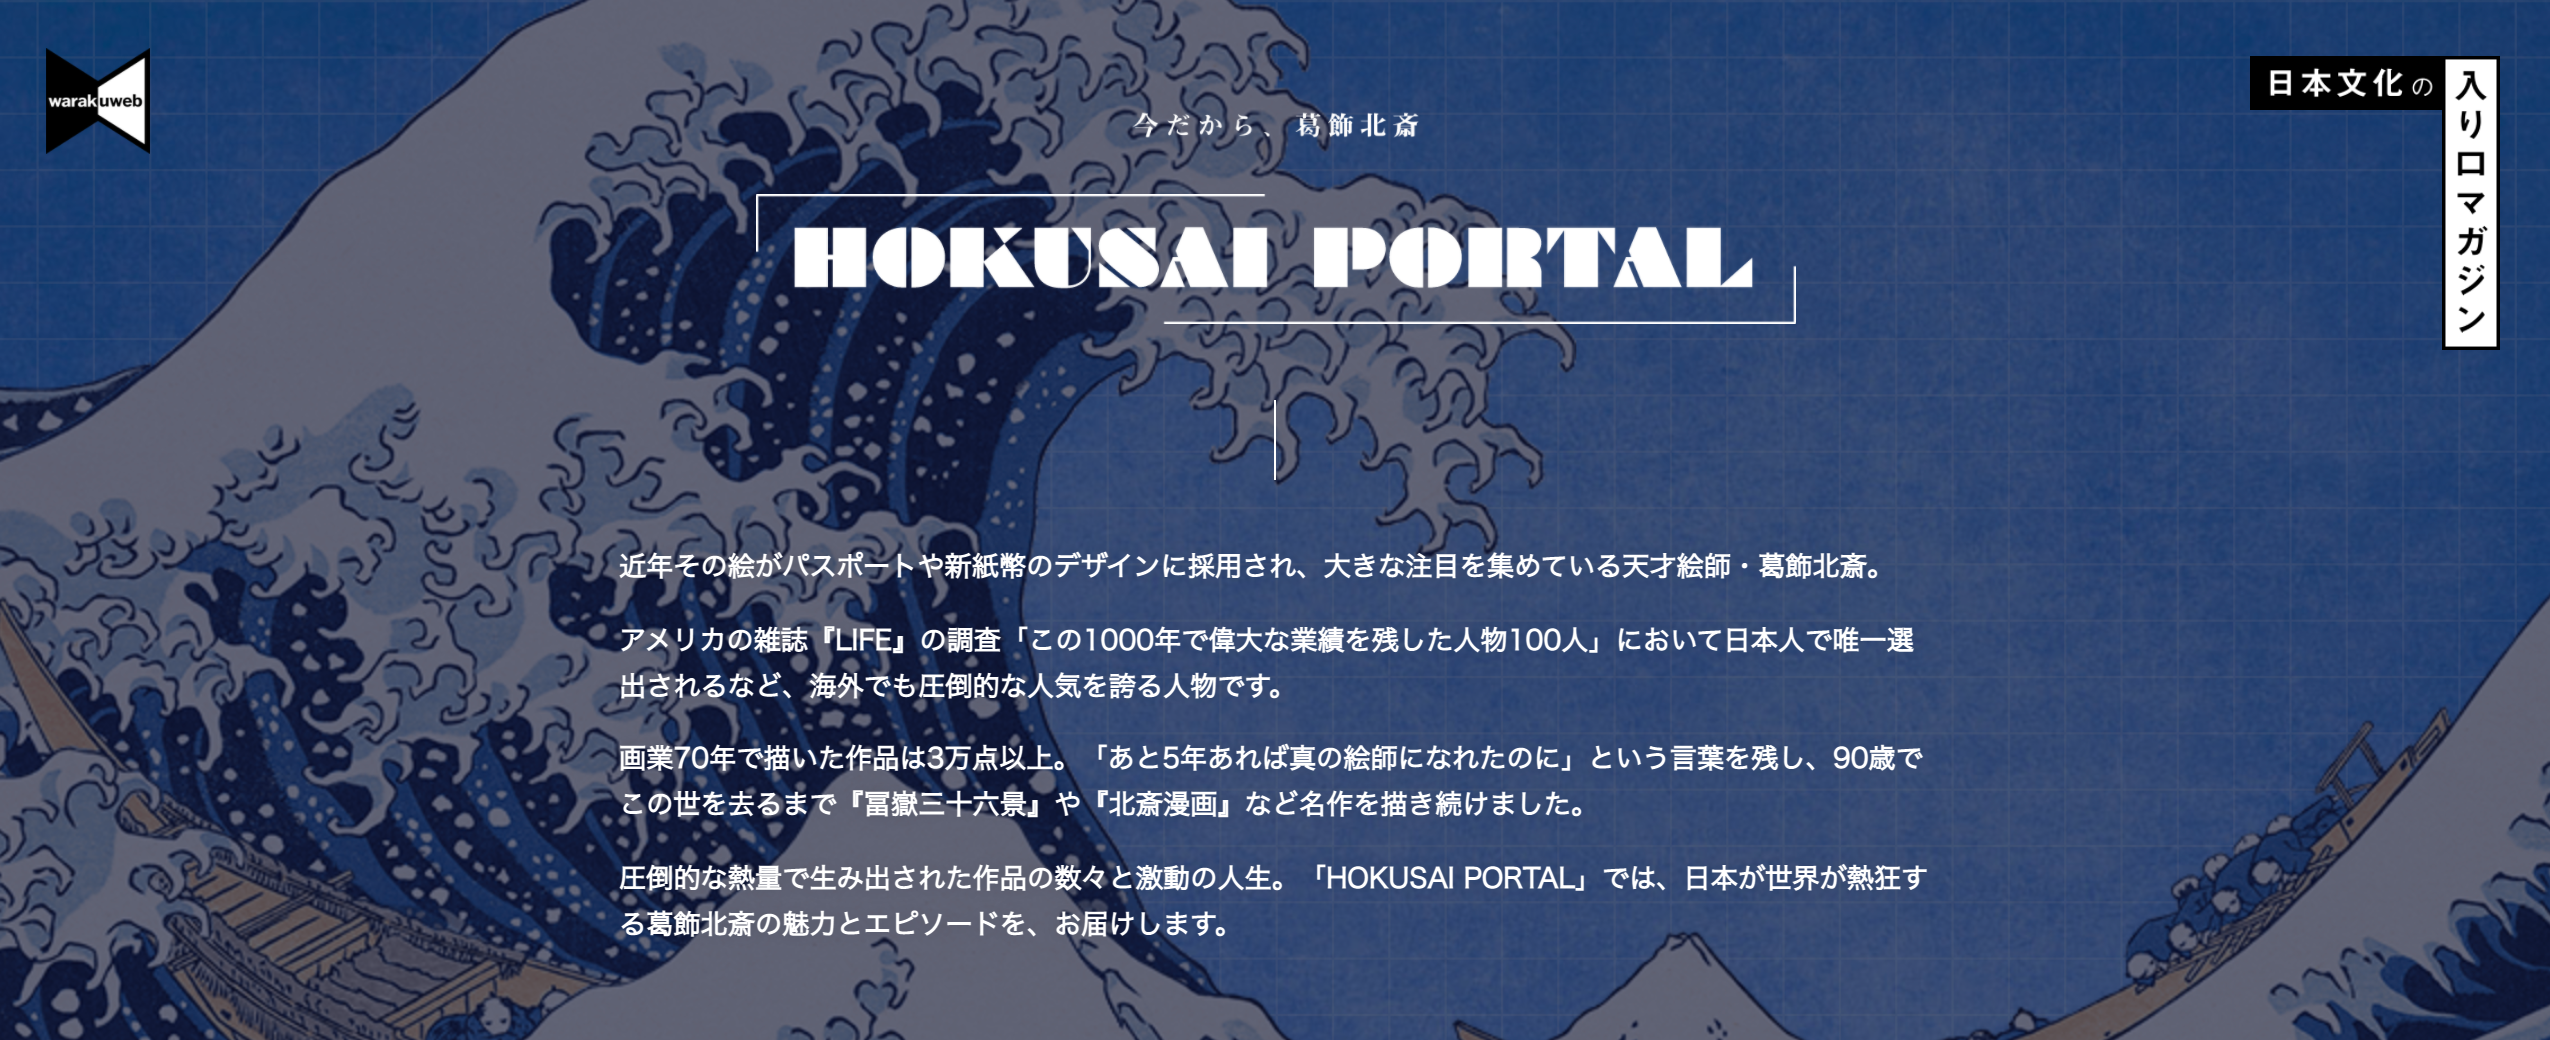 北斎にまつわる記事100本以上 天才絵師 葛飾北斎の情報を集めたポータルサイト Hokusai Portal オープン 株式会社小学館のプレスリリース